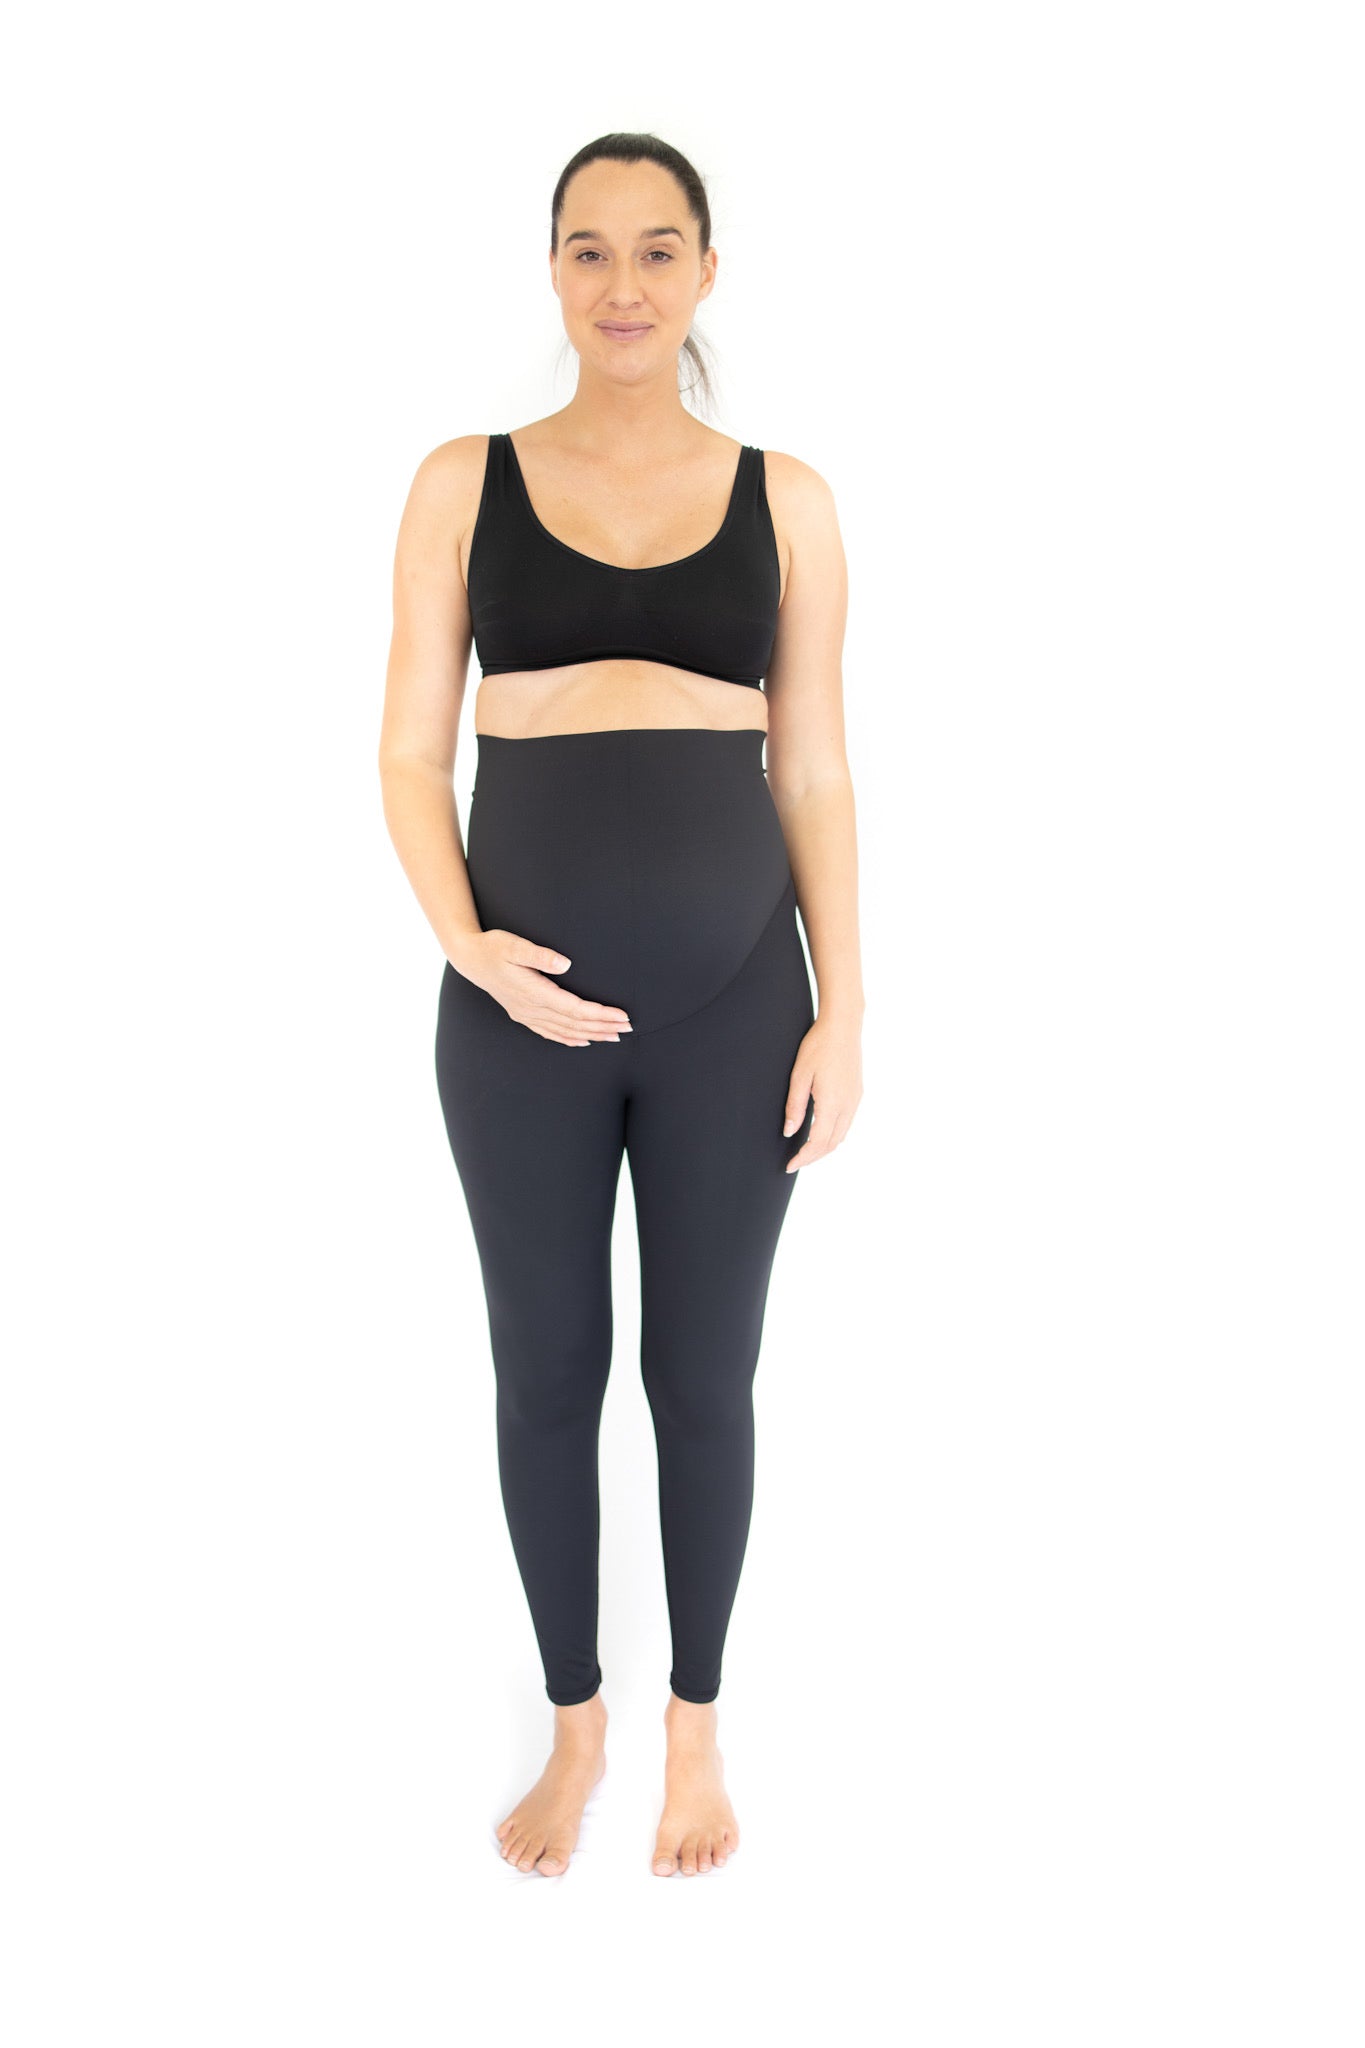 Emama Maternity Leggings - Black - Full Length